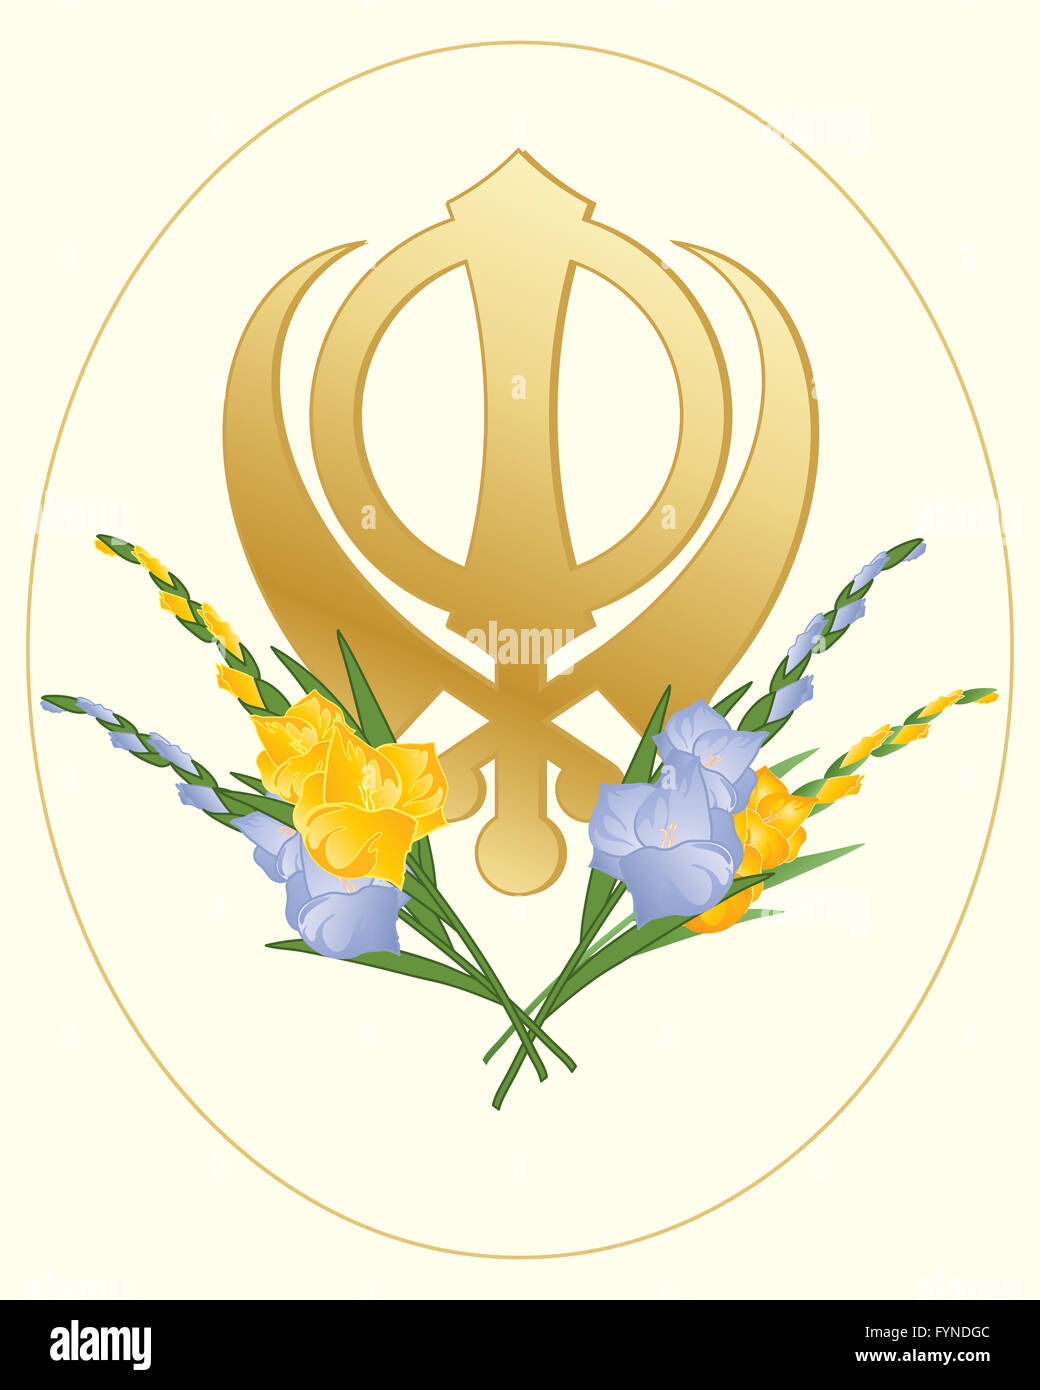 ein Beispiel für eine Grußkarte mit einem Sikh golden Symbol des Glaubens dekoriert mit Gladiolen-Blüten auf einem cremefarbenen Hintergrund Stockfoto